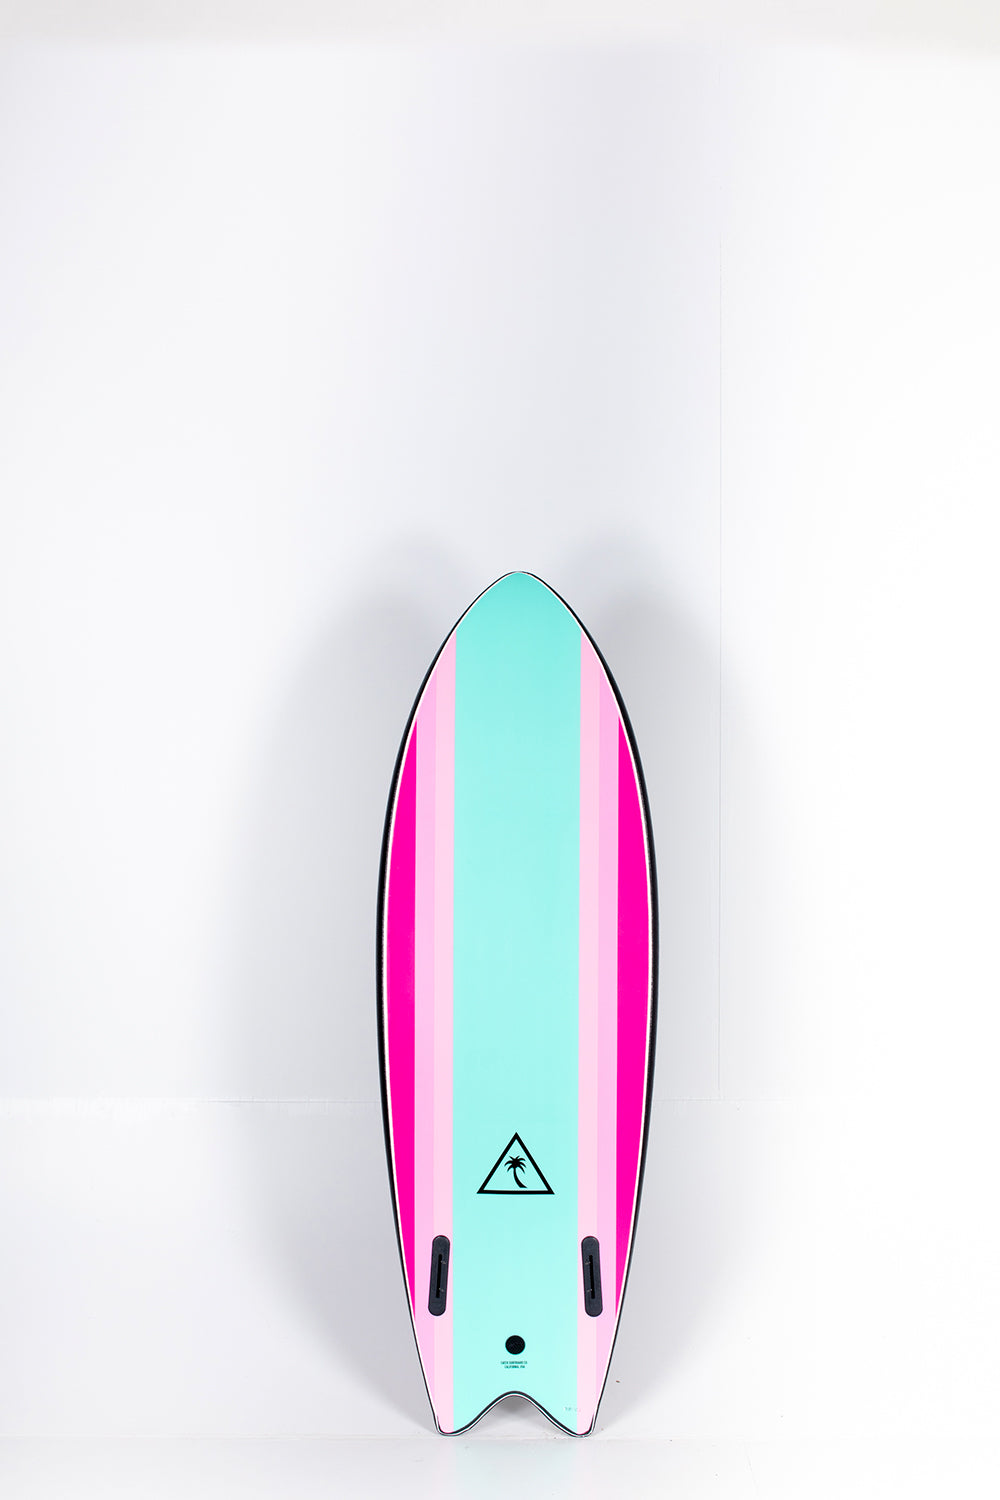 Pukas Surf Shop - Catch Surf - RETRO FISH TWIN FIN Black Turquoise - 5’6” x 21.65” x 2.95” x 45l.